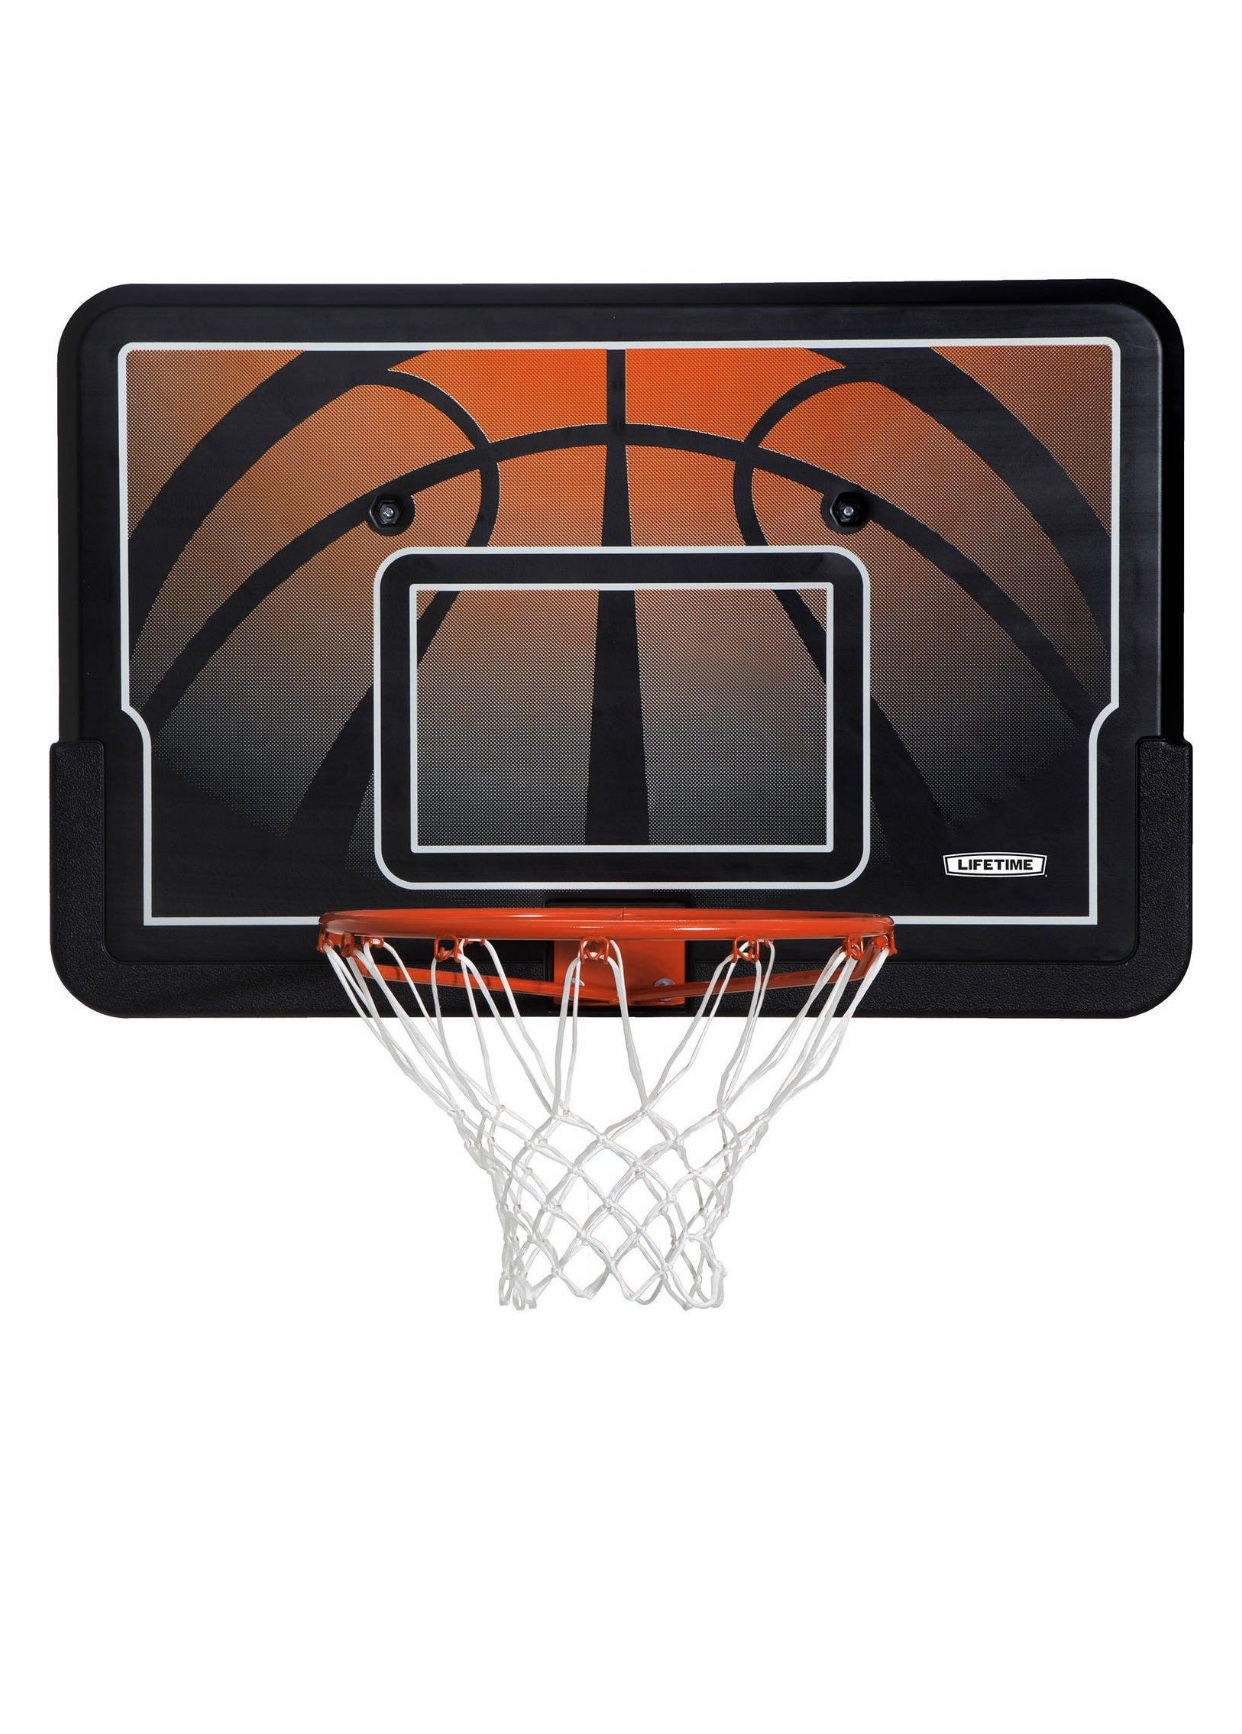 Basketball Rim and Backboard Combo